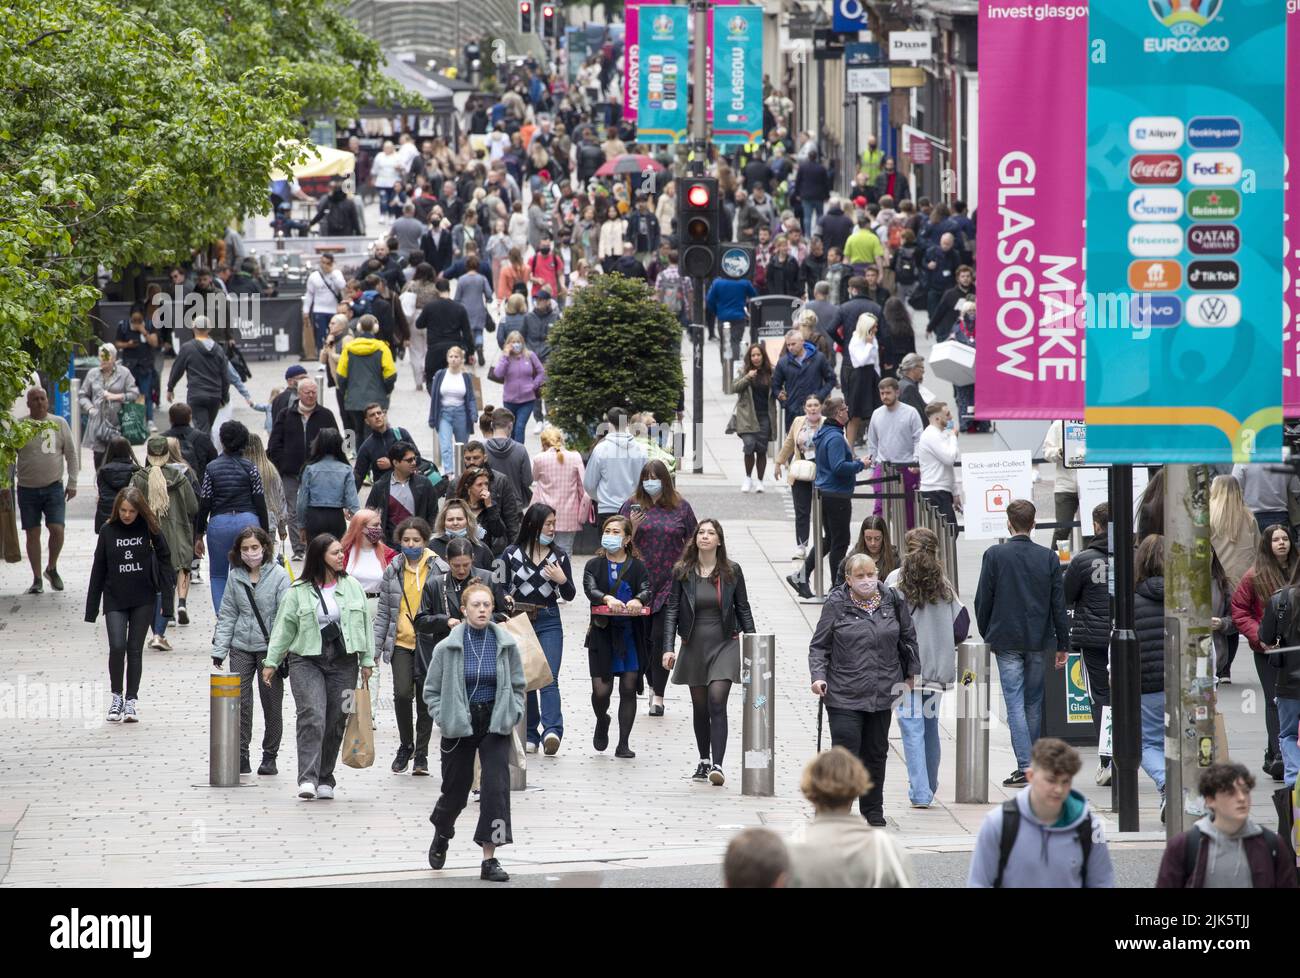 Foto vom 28/05/21 von Einkäufern im Stadtzentrum von Glasgow, da Unternehmen „auf dem Wasser stehen“, da sie weiterhin von steigenden Preisen betroffen sind, wie neue Untersuchungen zeigen. Stockfoto